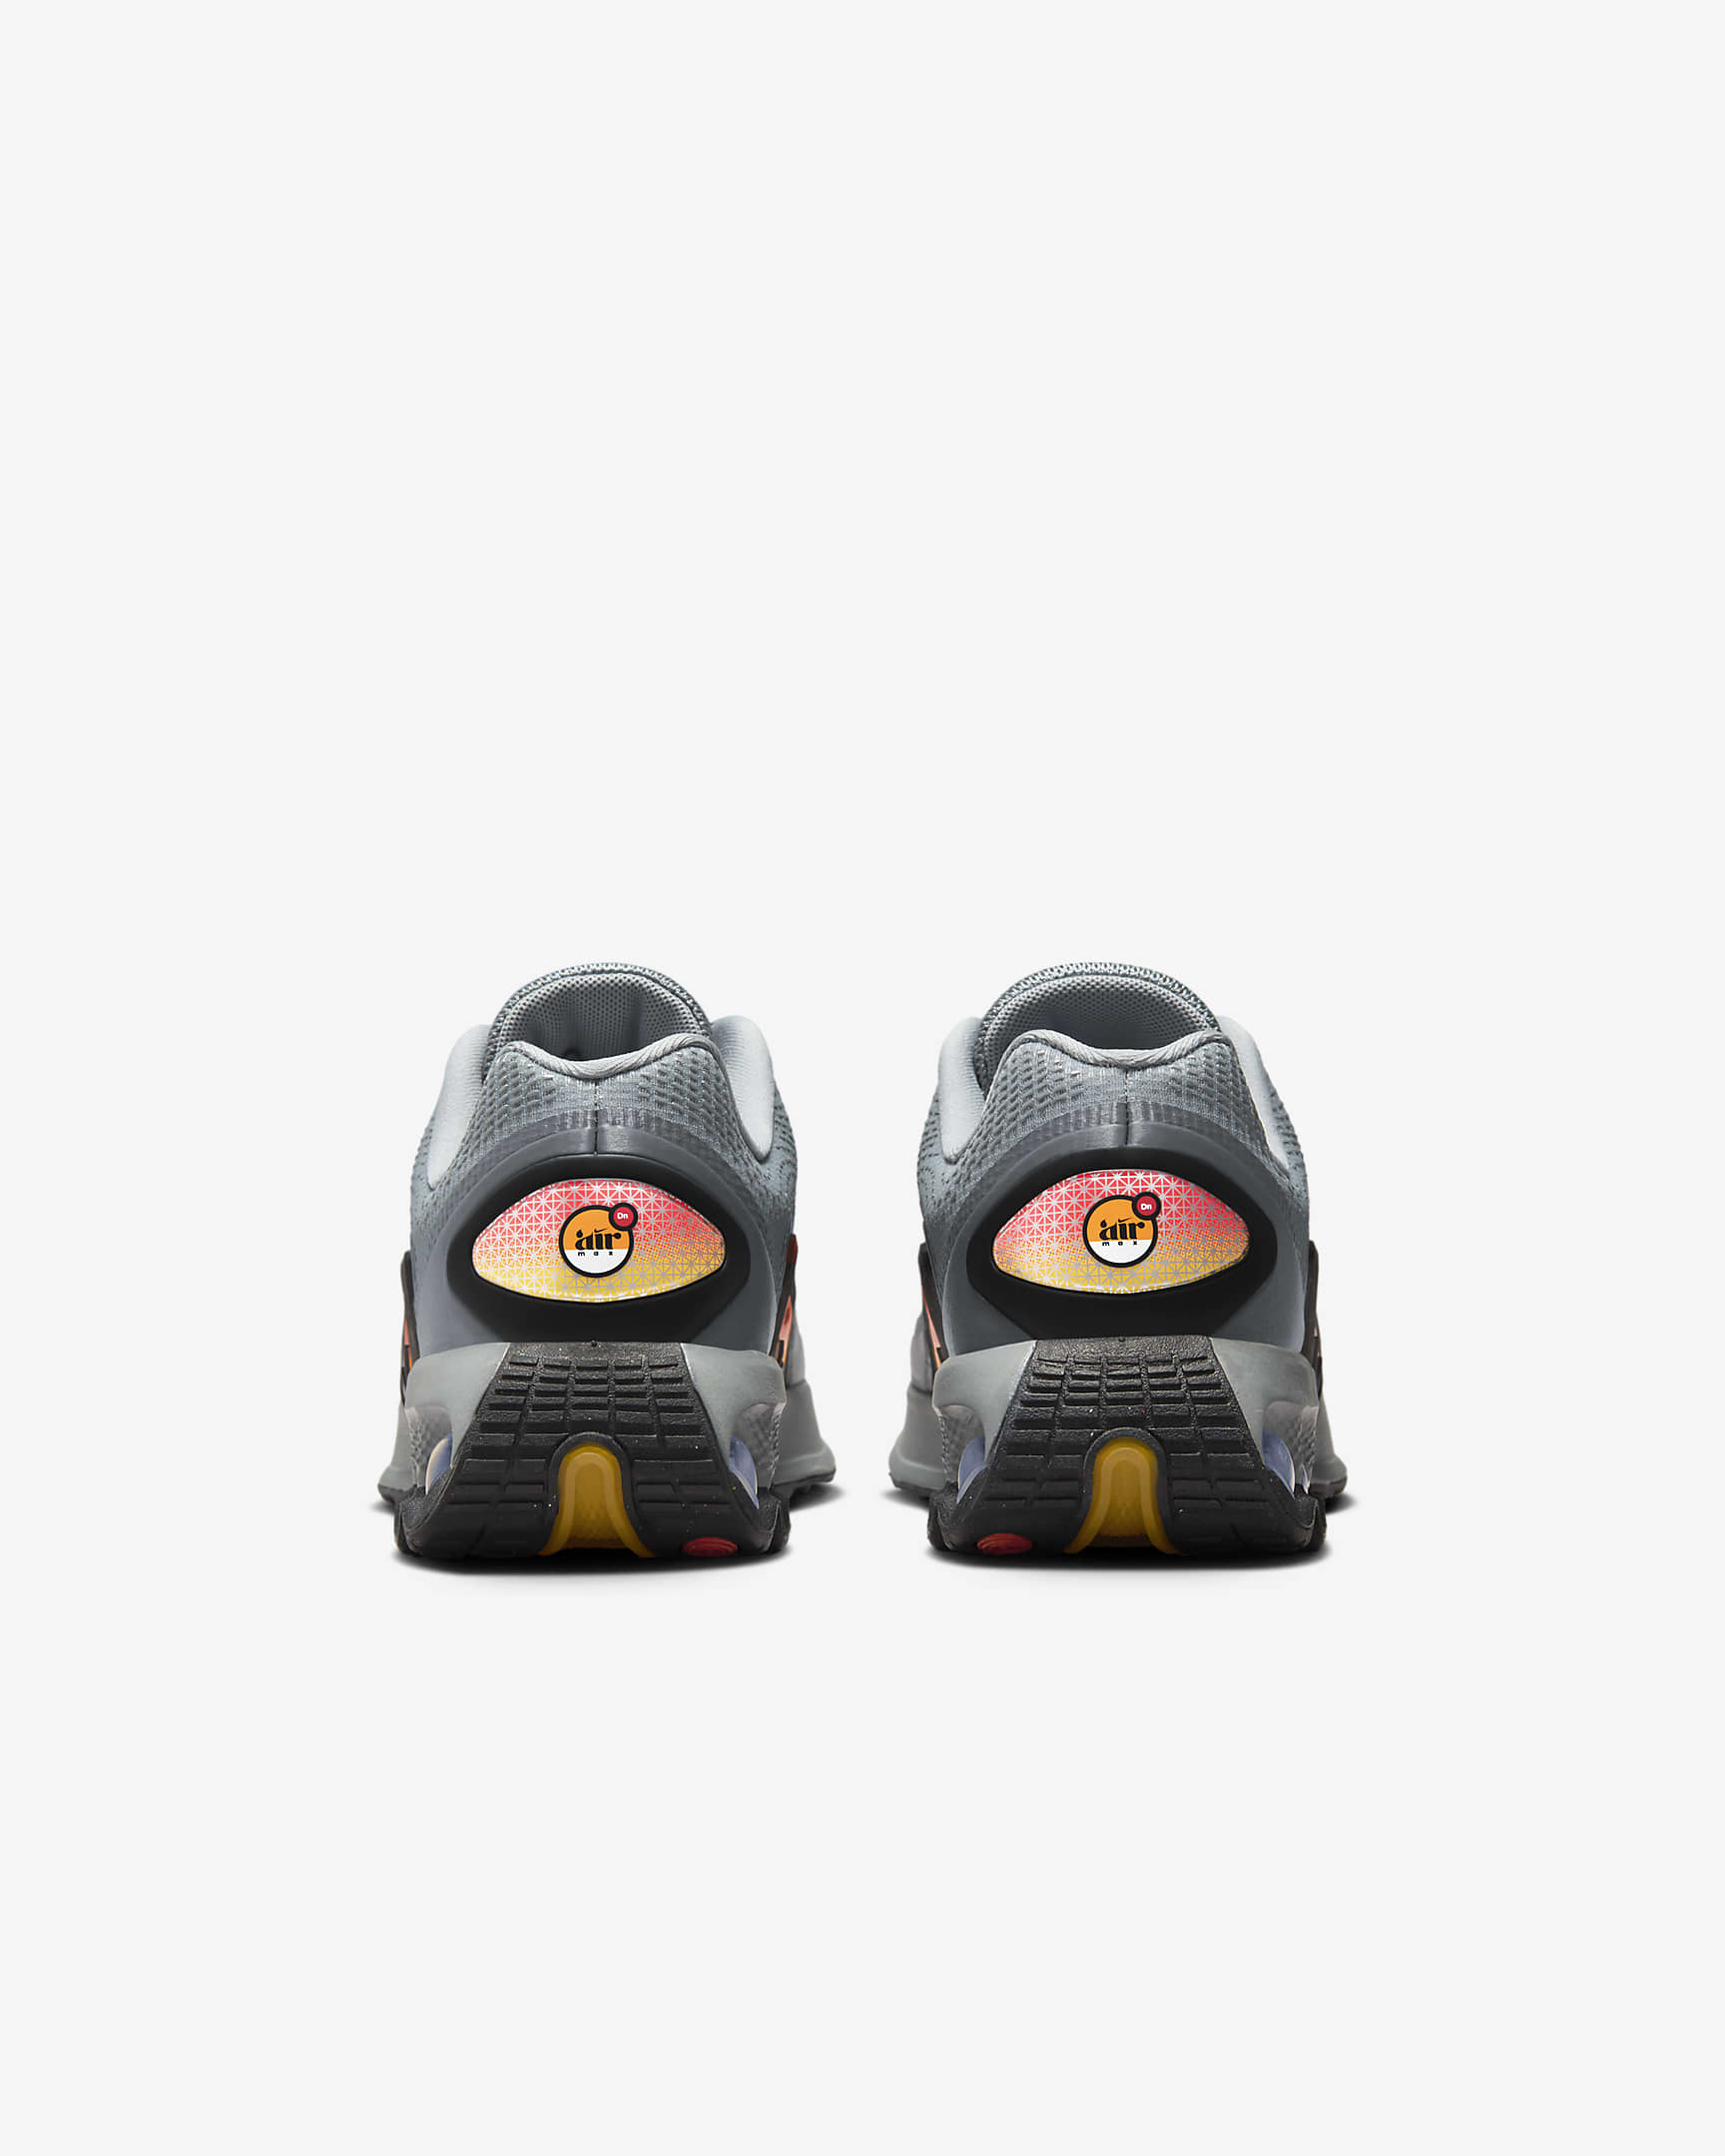 Nike Air Max Dn Schuhe für ältere Kinder - Particle Grey/Smoke Grey/Wolf Grey/Schwarz